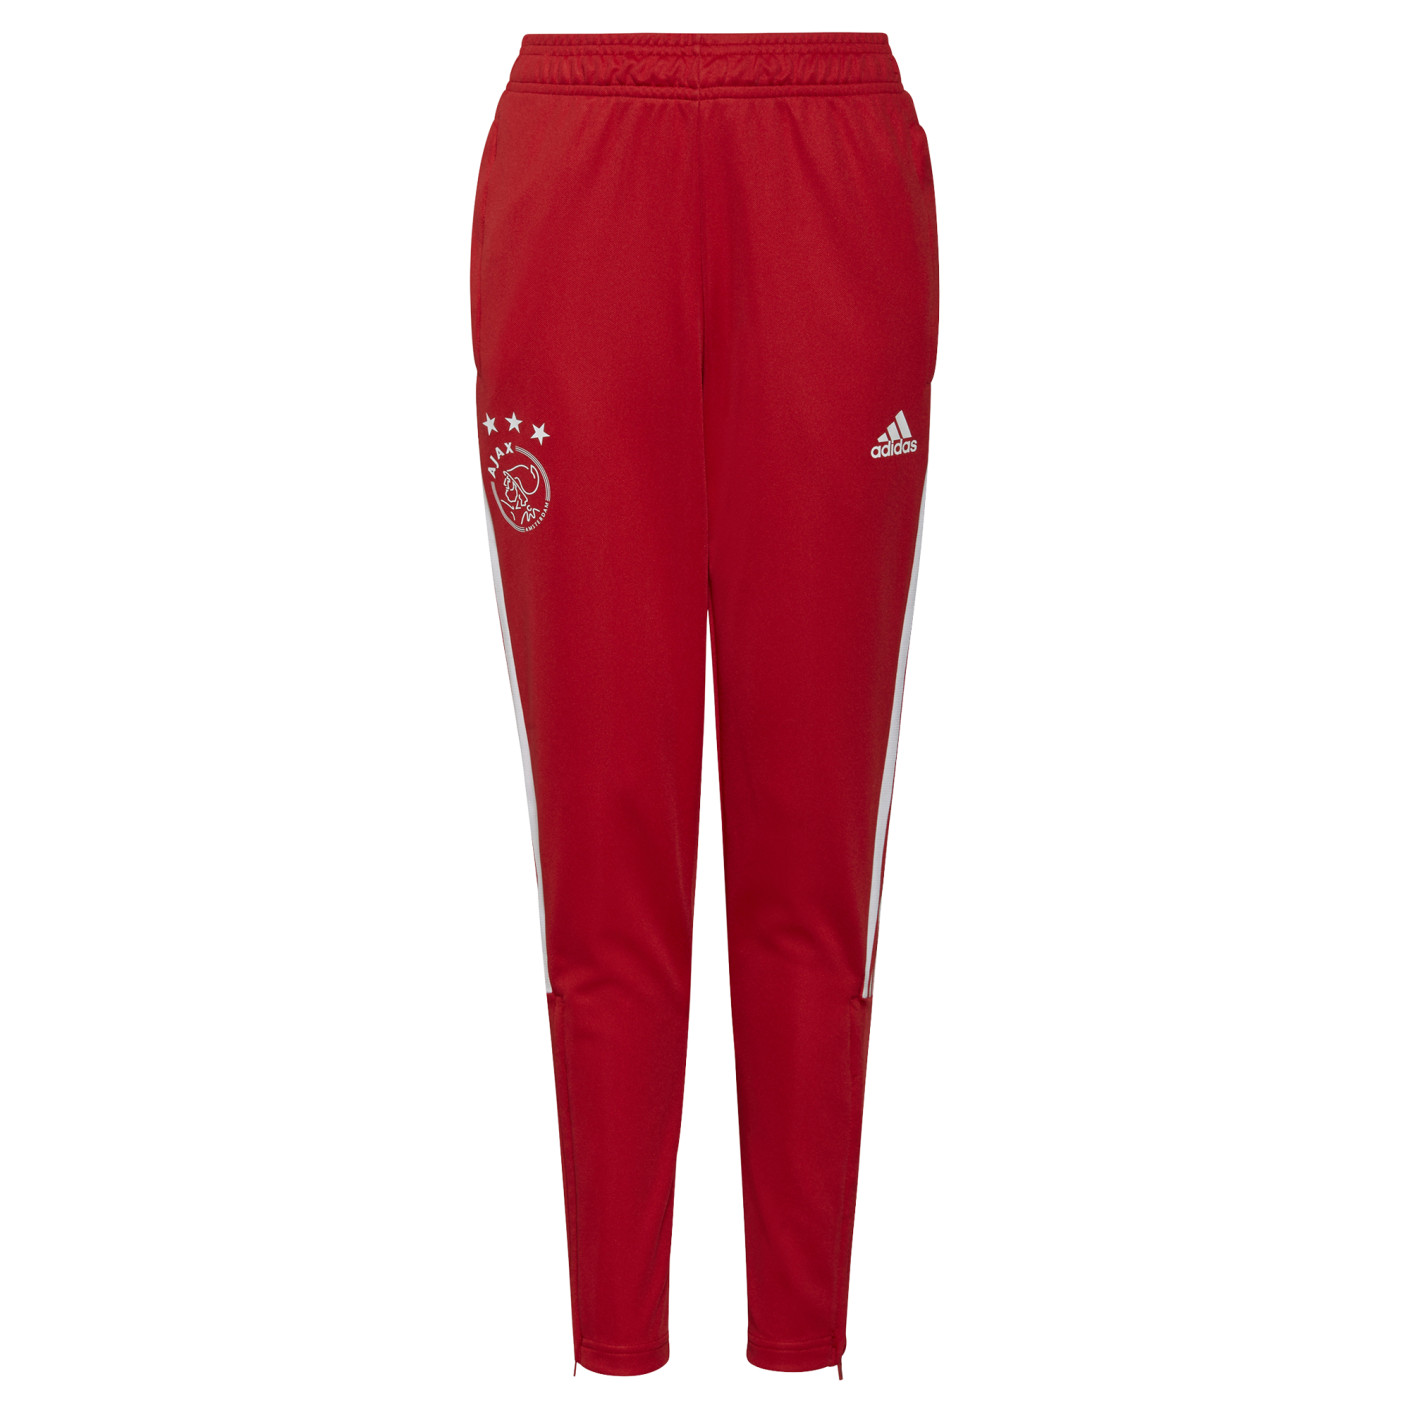 Pantalon d'entraînement Adidas Ajax rouge pour enfants 2021-2022